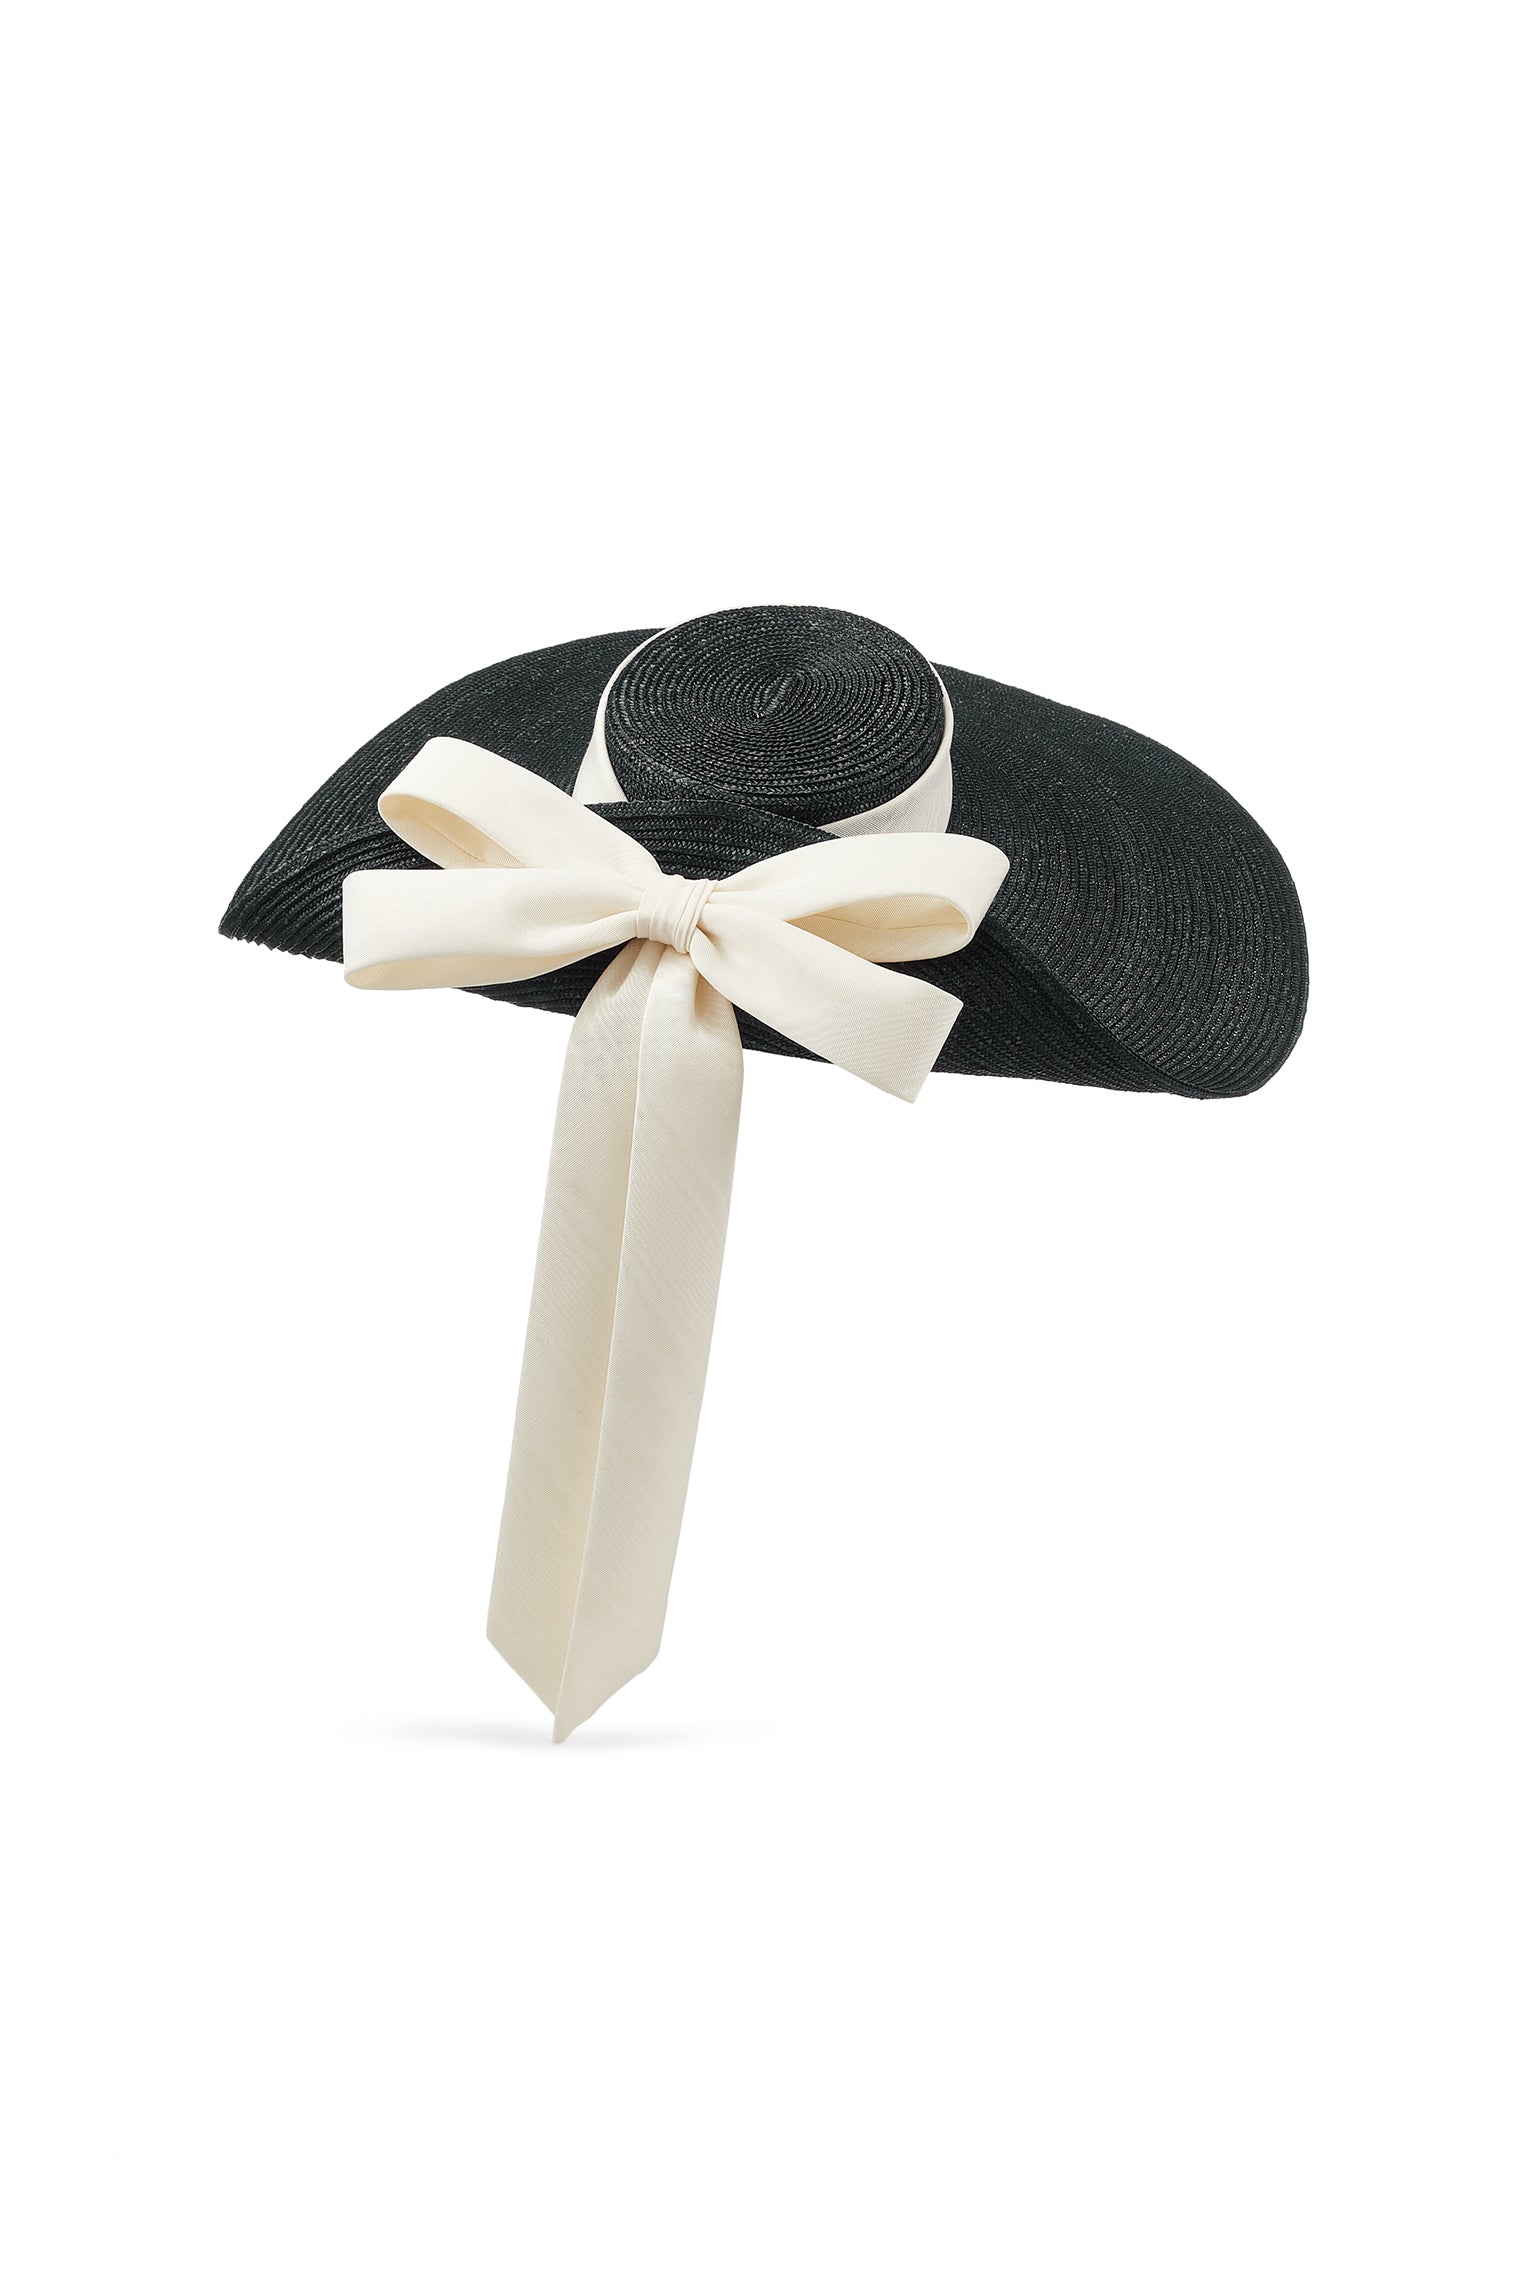 Lady Grey Black Wide Brim Hat - Women’s Hats - Lock & Co. Hatters London UK